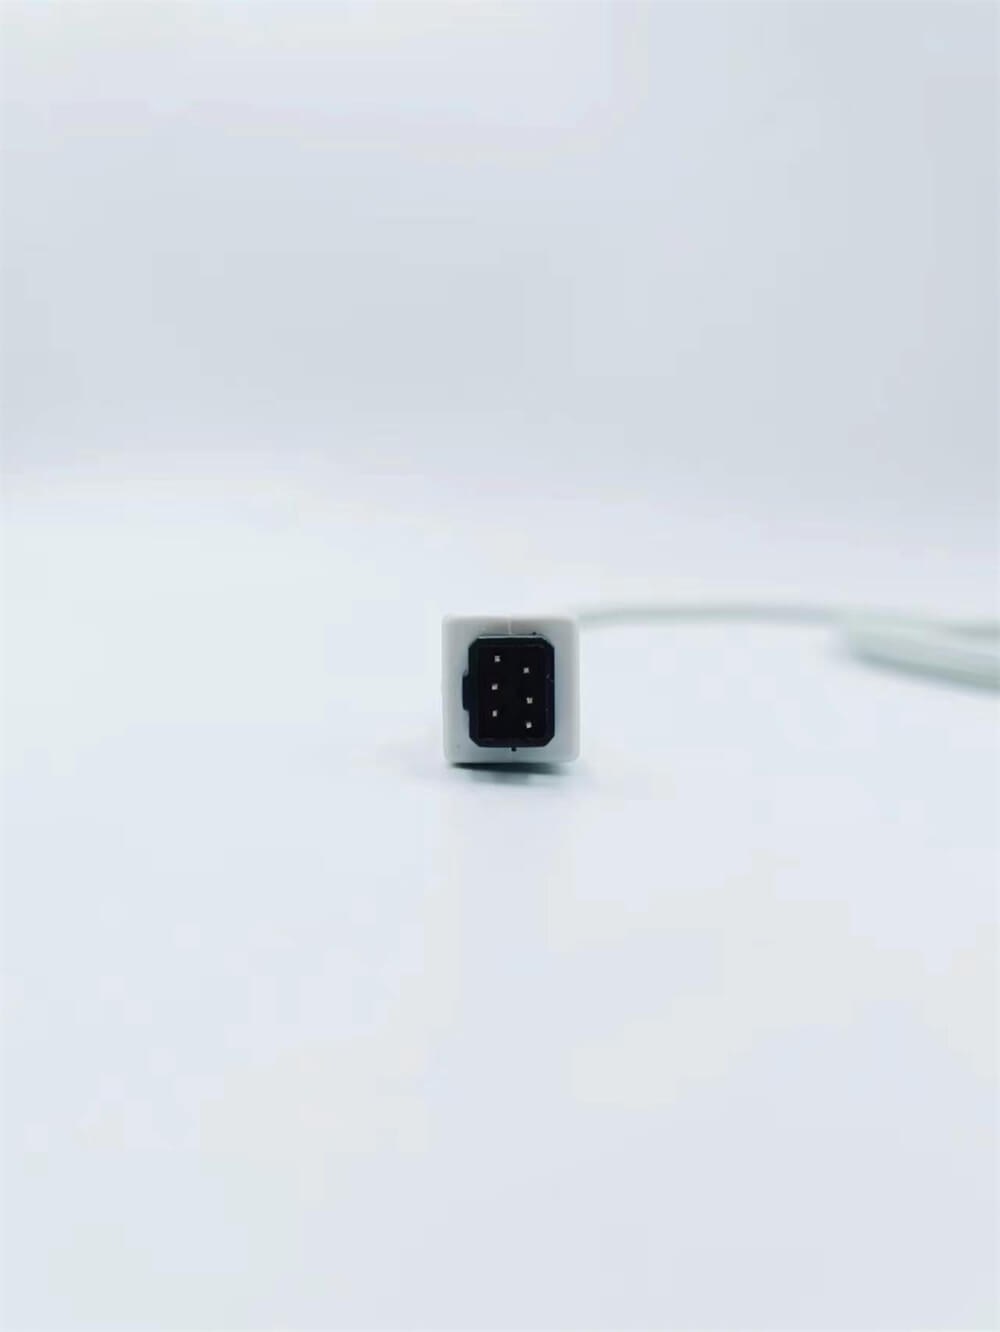 Sensore Spo2 a 6 pin Minolta riutilizzabile per applicazioni di monitoraggio morbido per adulti